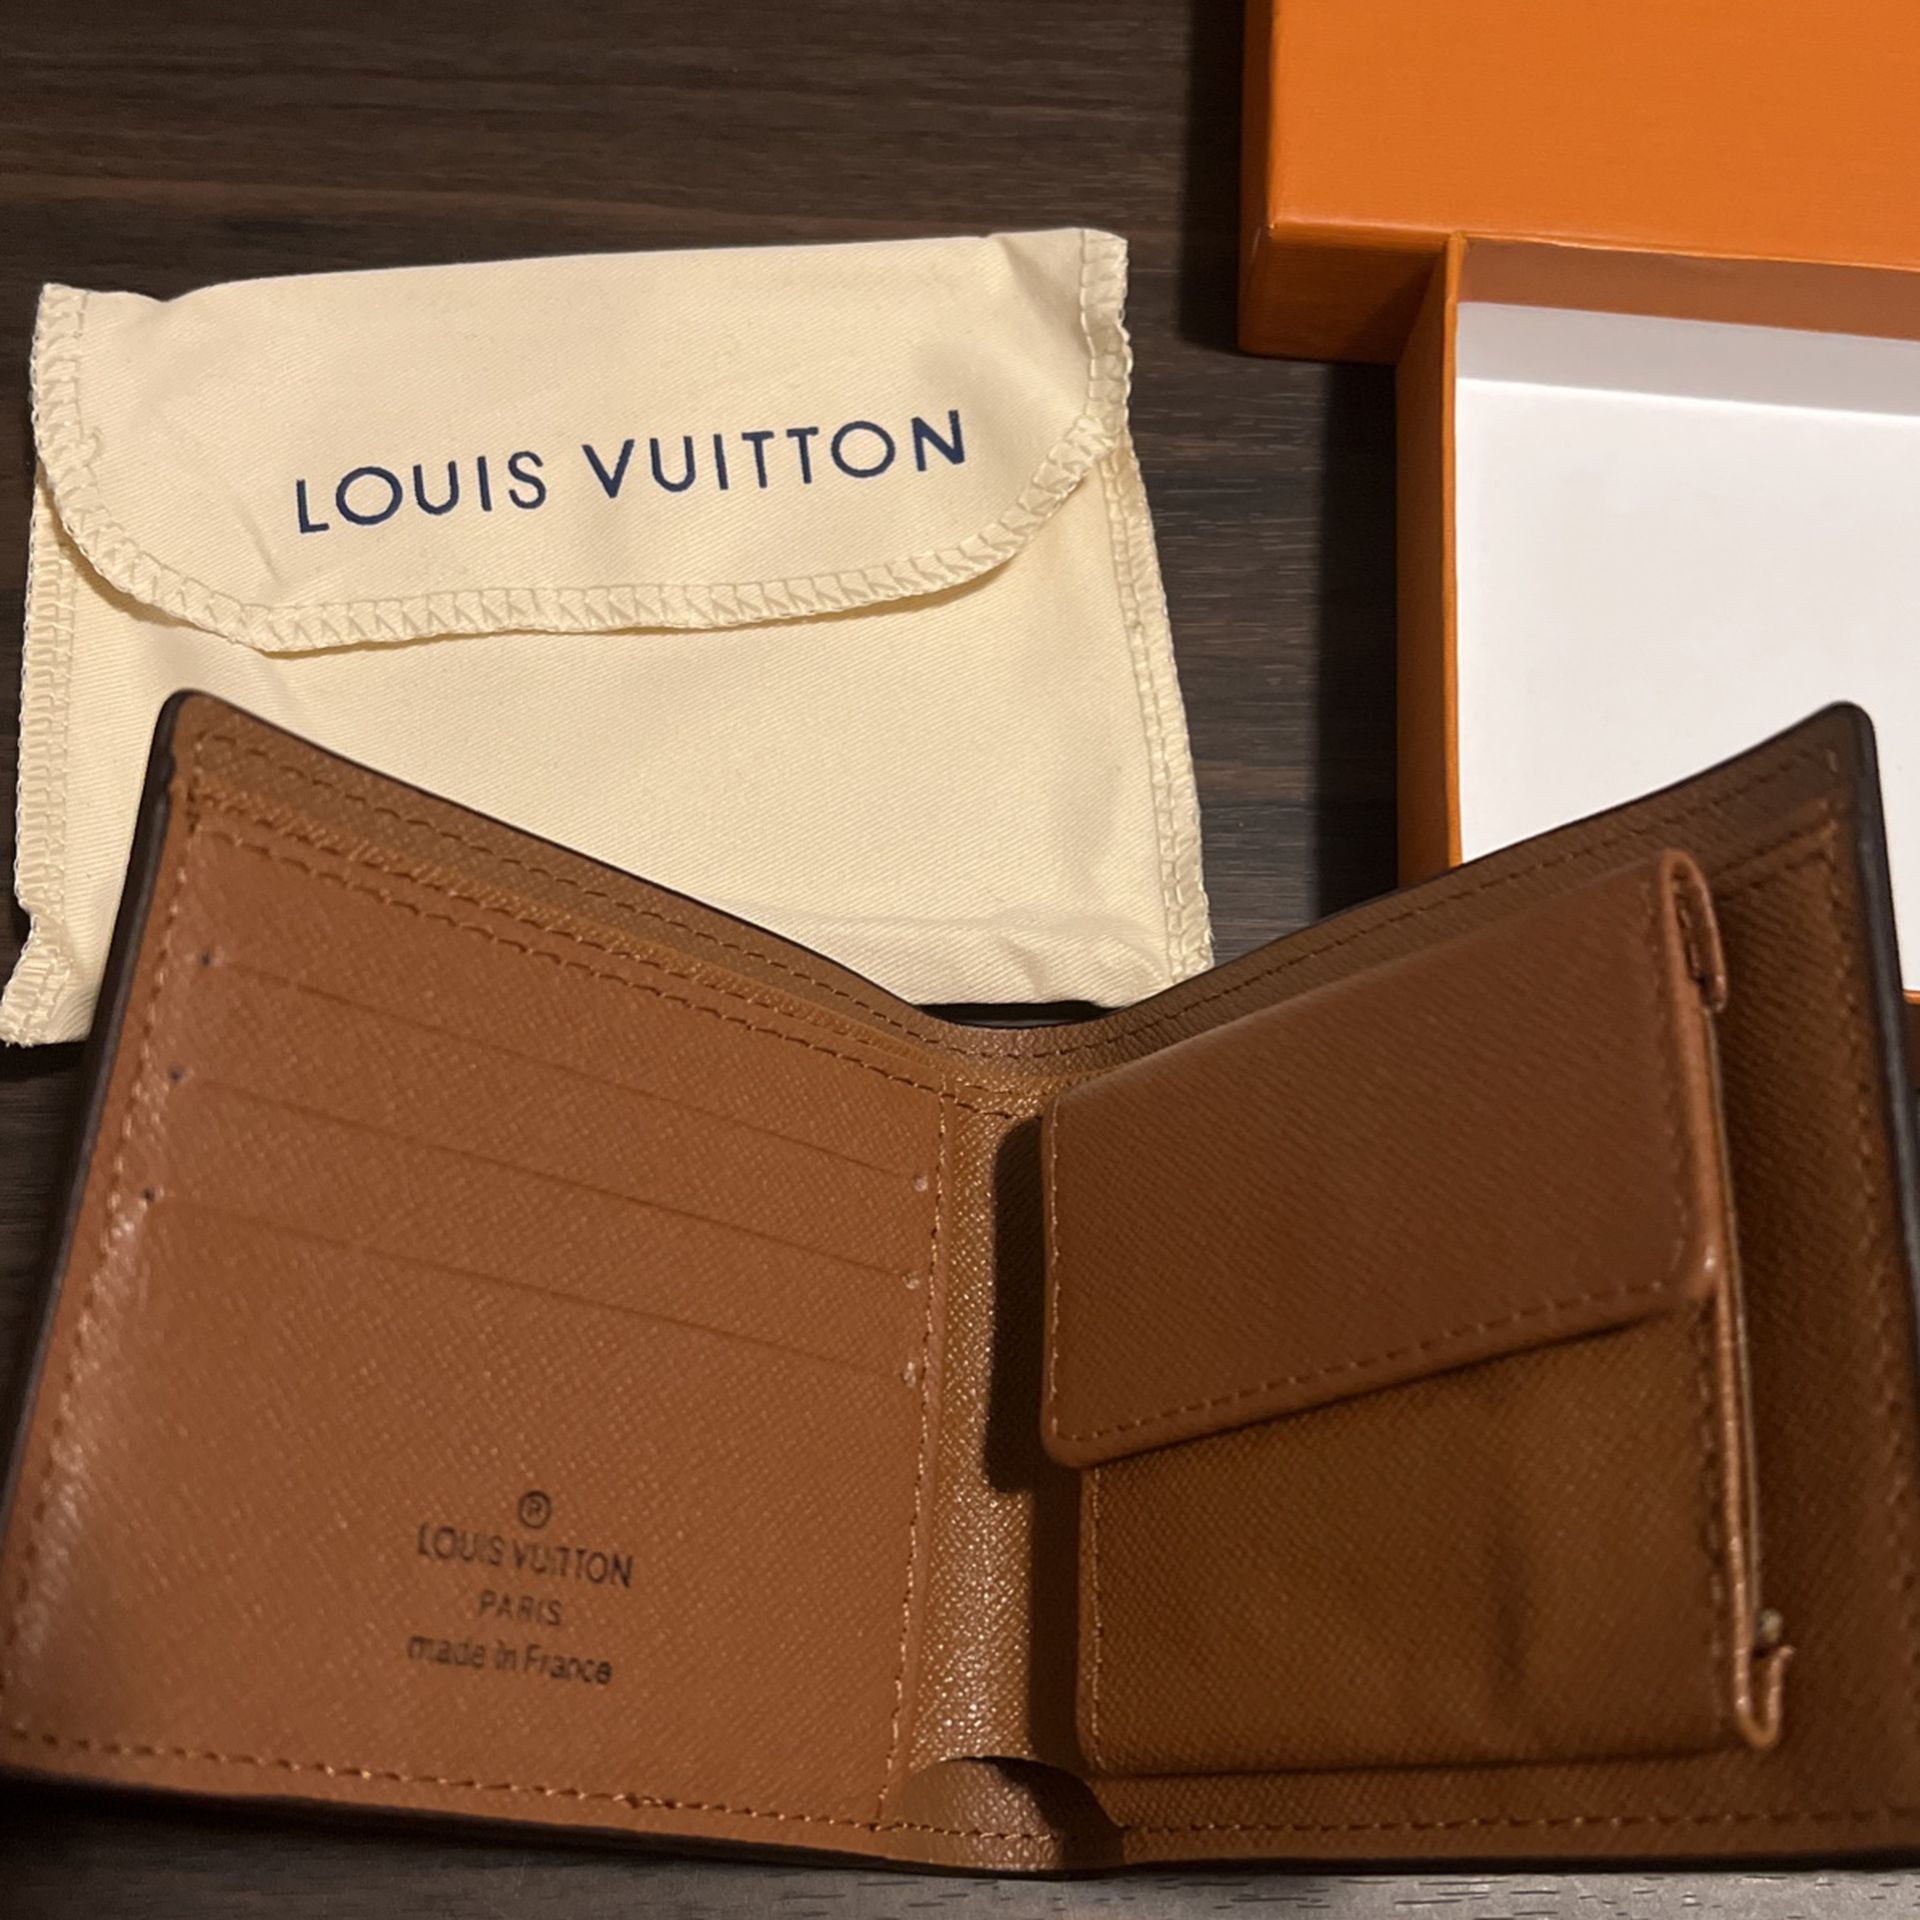 Authentic Louis Vuitton Monogram Multiple Wallet M60895